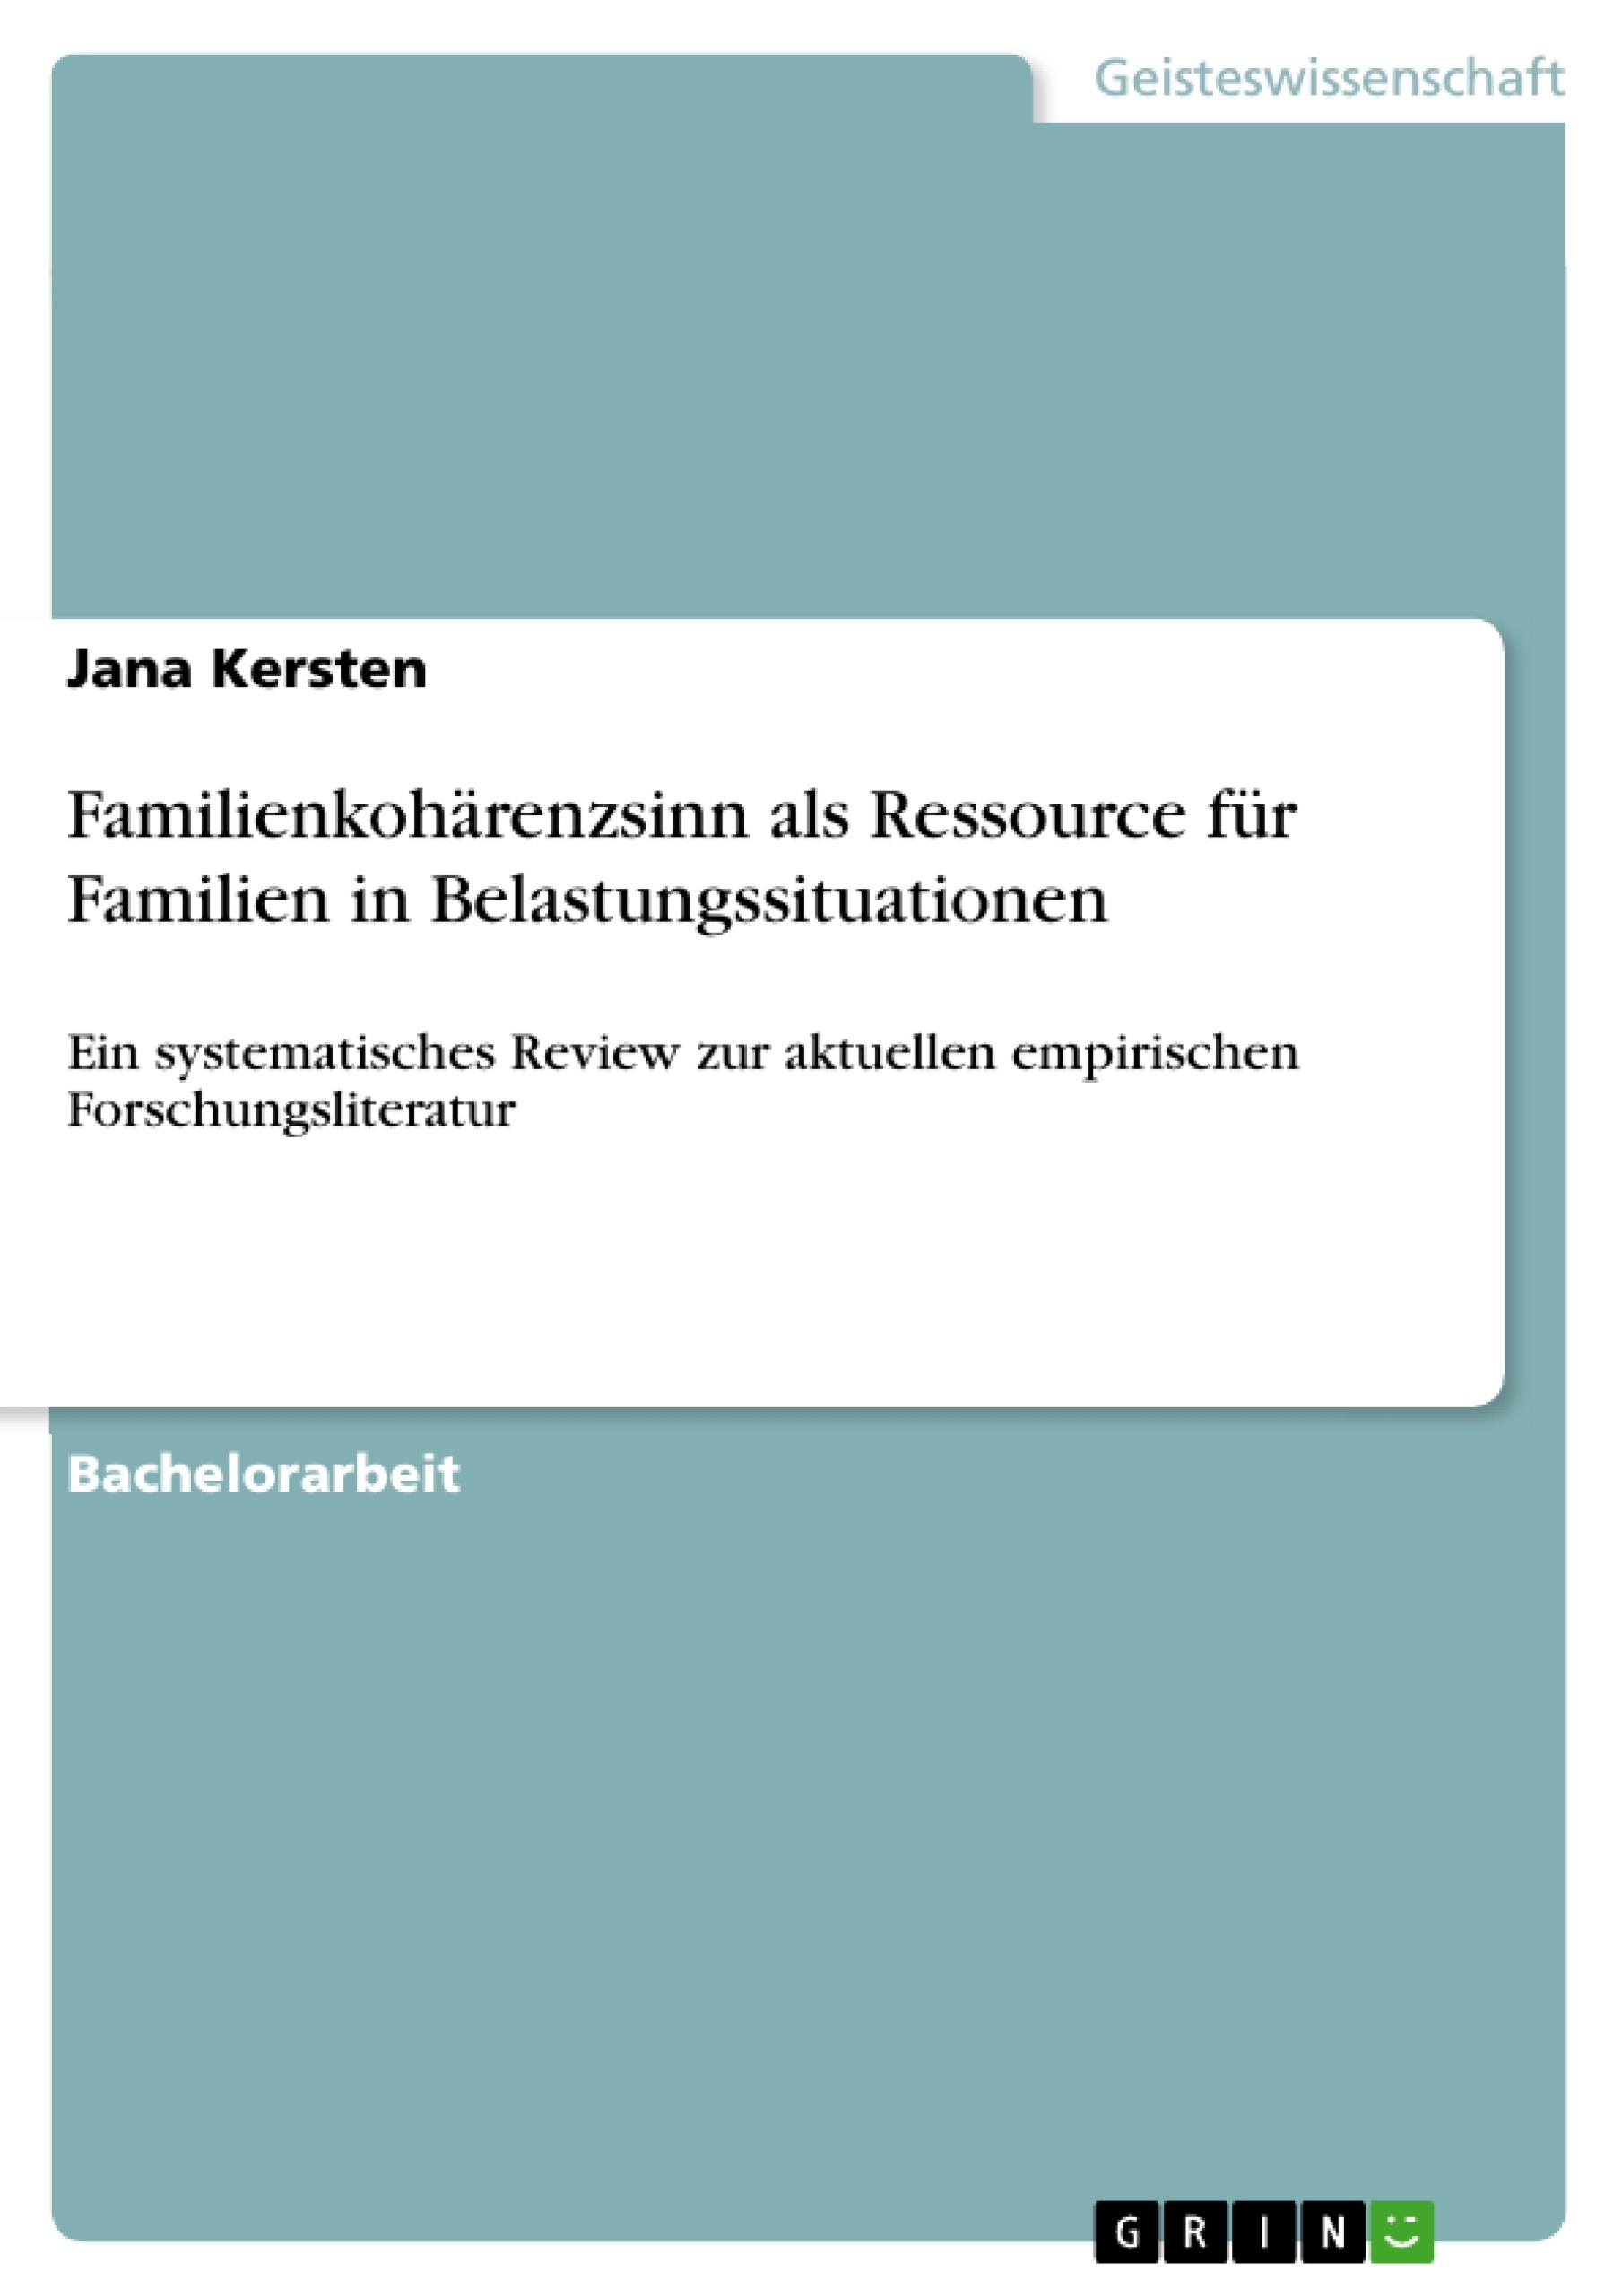 Titre: Familienkohärenzsinn als Ressource für Familien in Belastungssituationen